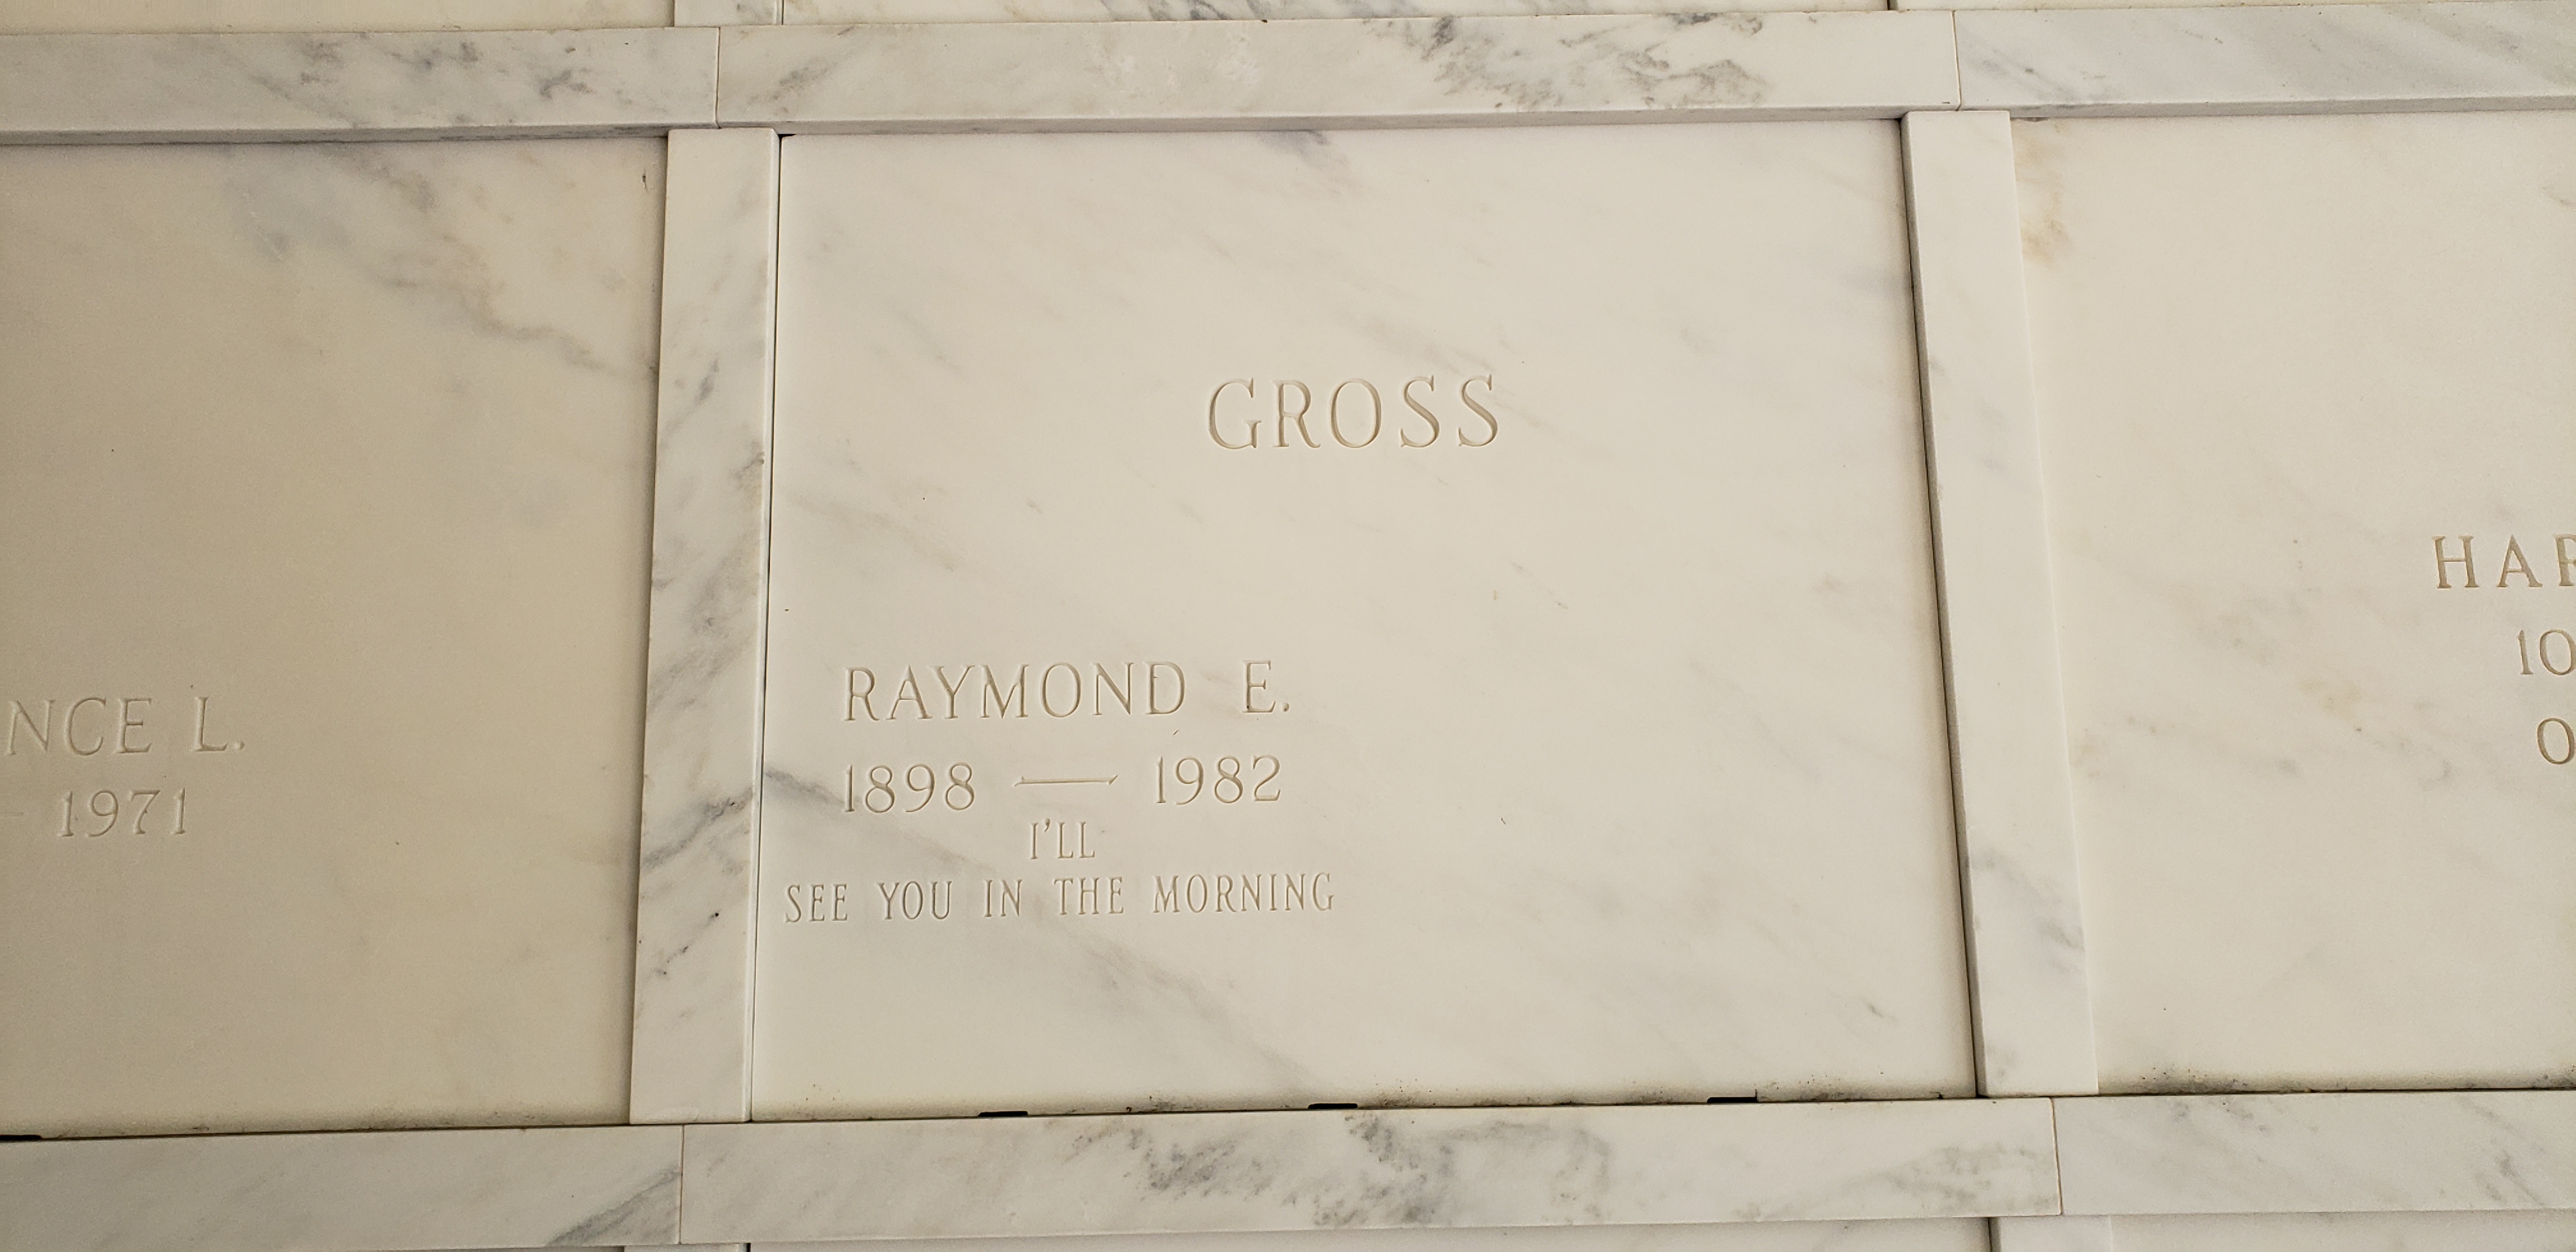 Raymond E Gross